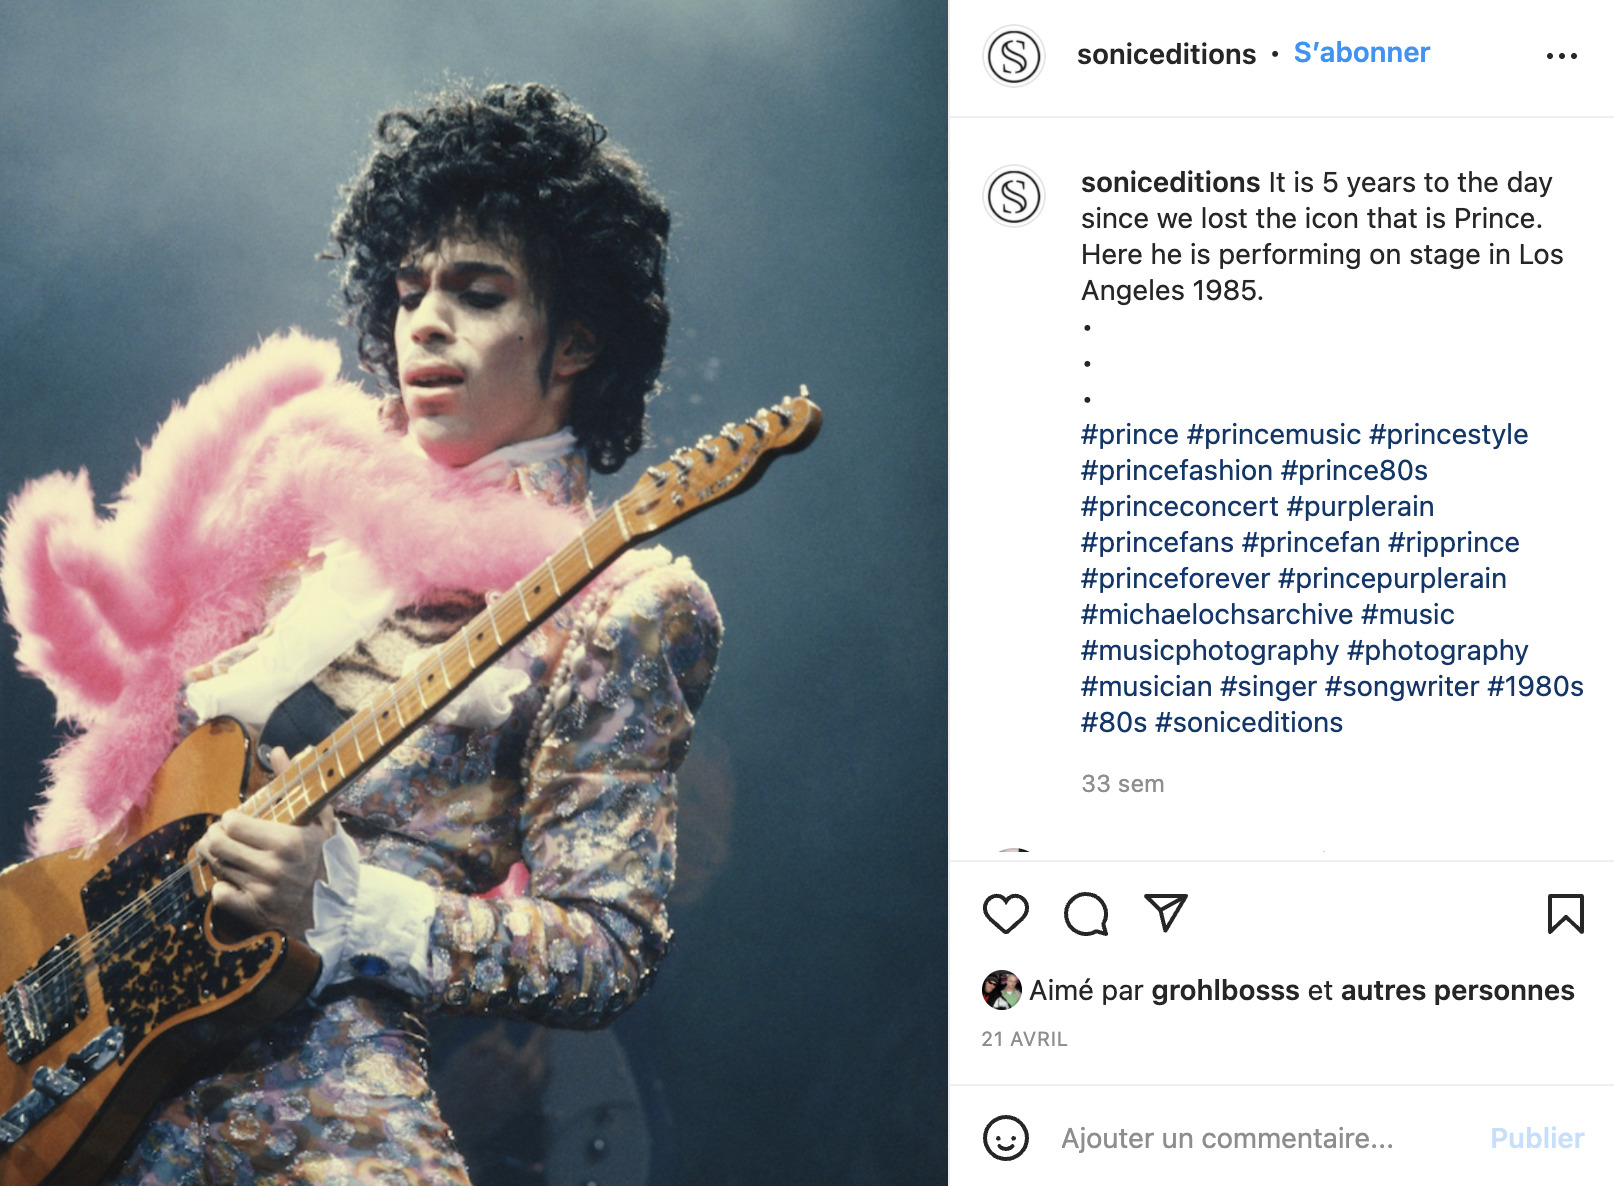 Prince sur scène avec costume et boa rose